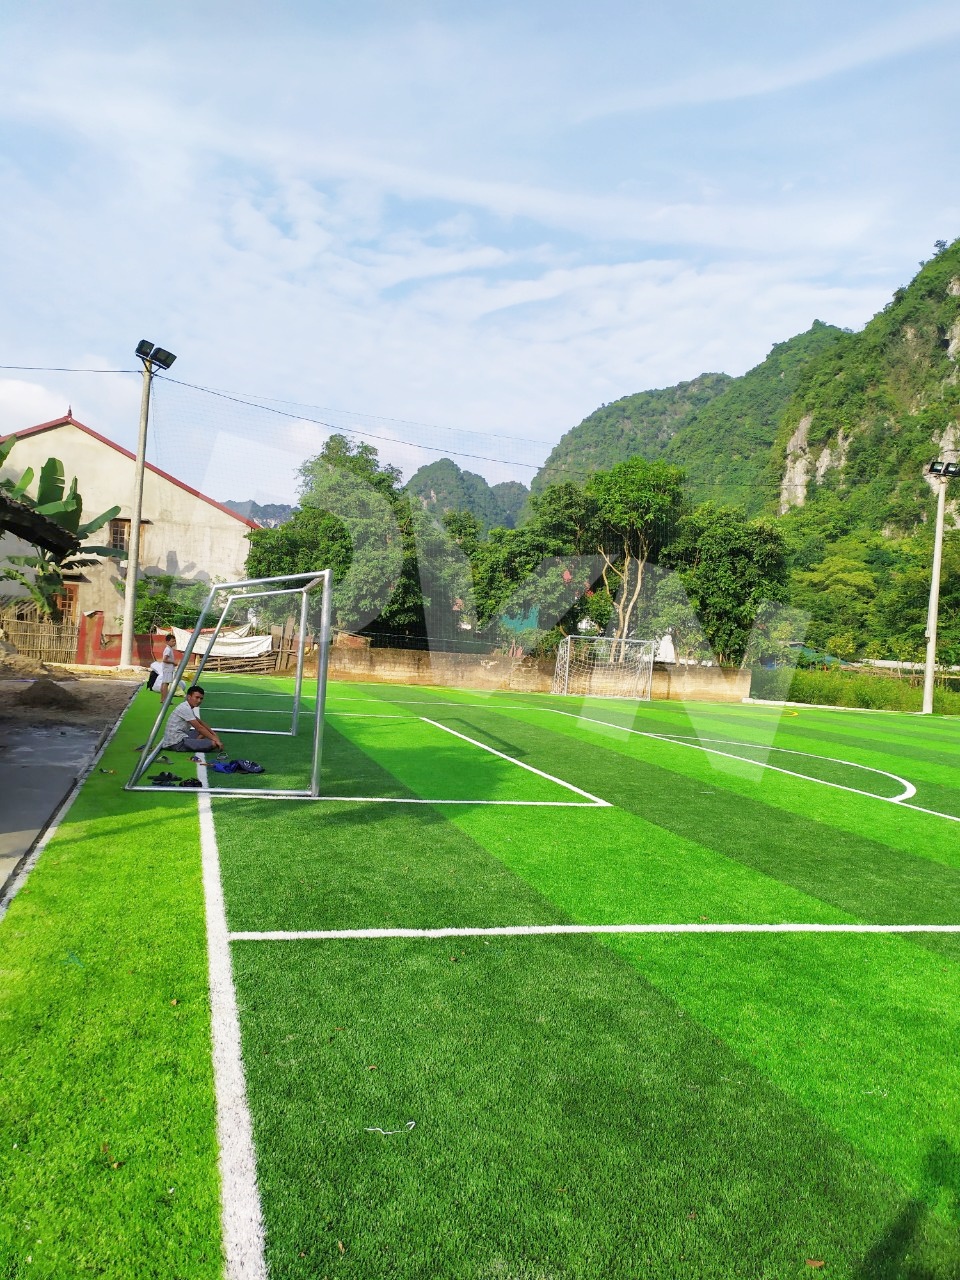 Thi công sân bóng đá cỏ nhân tạo tại Thị trấn Văn Quan - Lạng Sơn ...